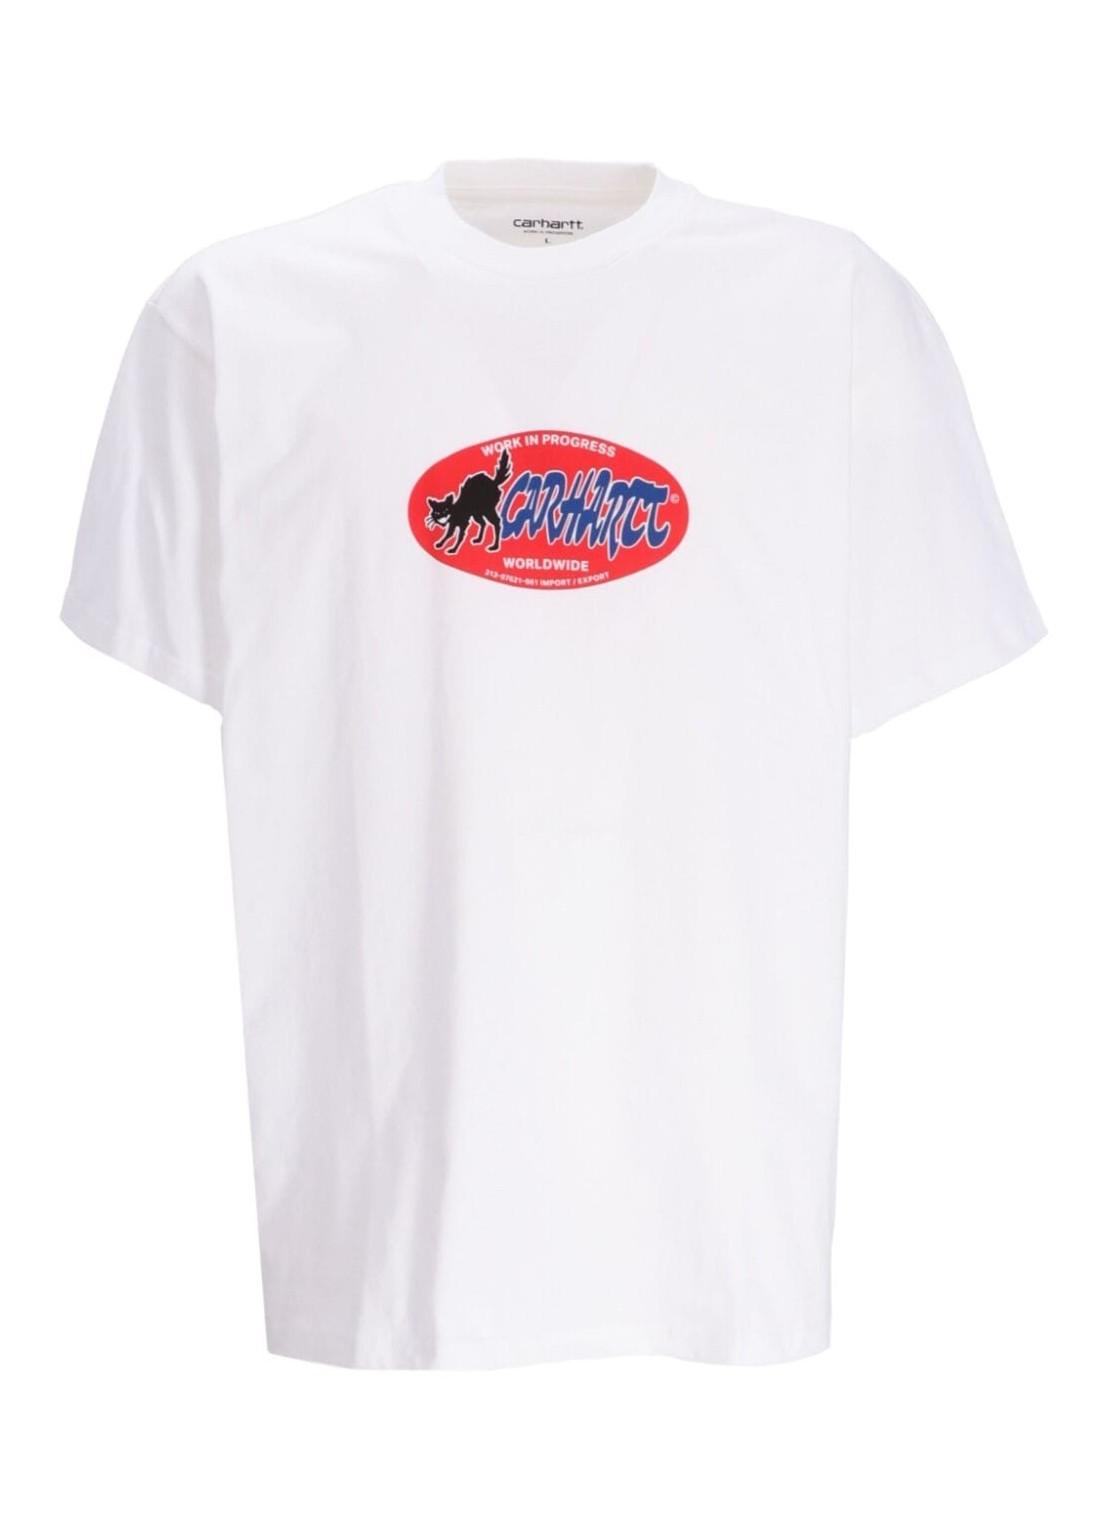 Camiseta carhartt t-shirt man s/s cat sticker t-shirt i032886 02xx talla XXL
 